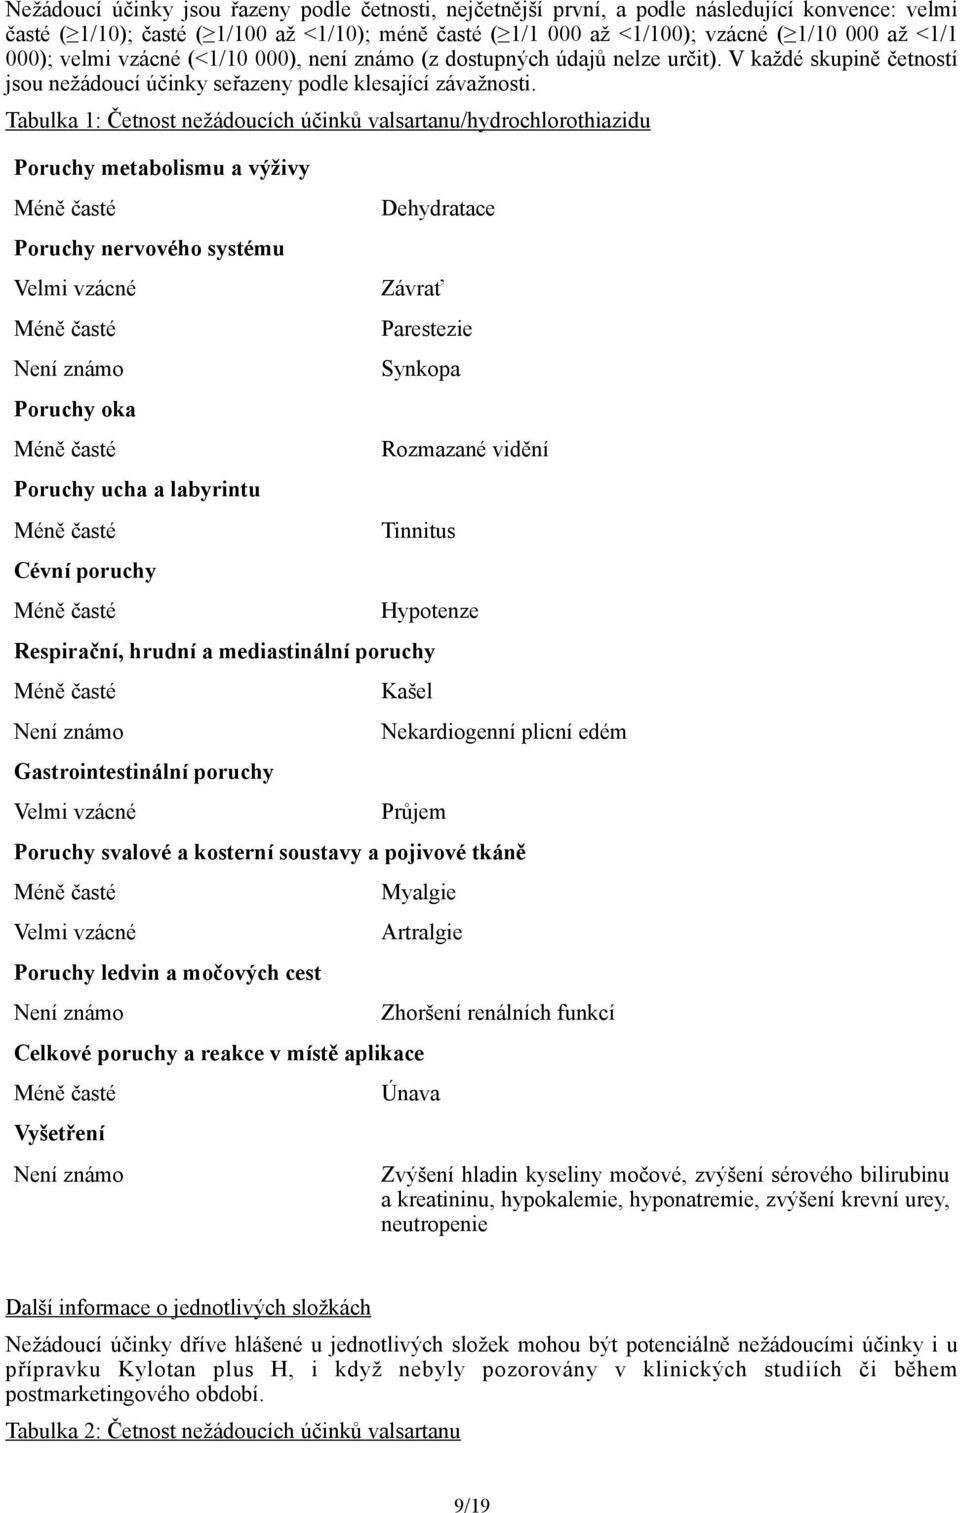 Tabulka 1: Četnost nežádoucích účinků valsartanu/hydrochlorothiazidu Poruchy metabolismu a výživy Poruchy nervového systému Velmi vzácné Poruchy oka Poruchy ucha a labyrintu Cévní poruchy Dehydratace